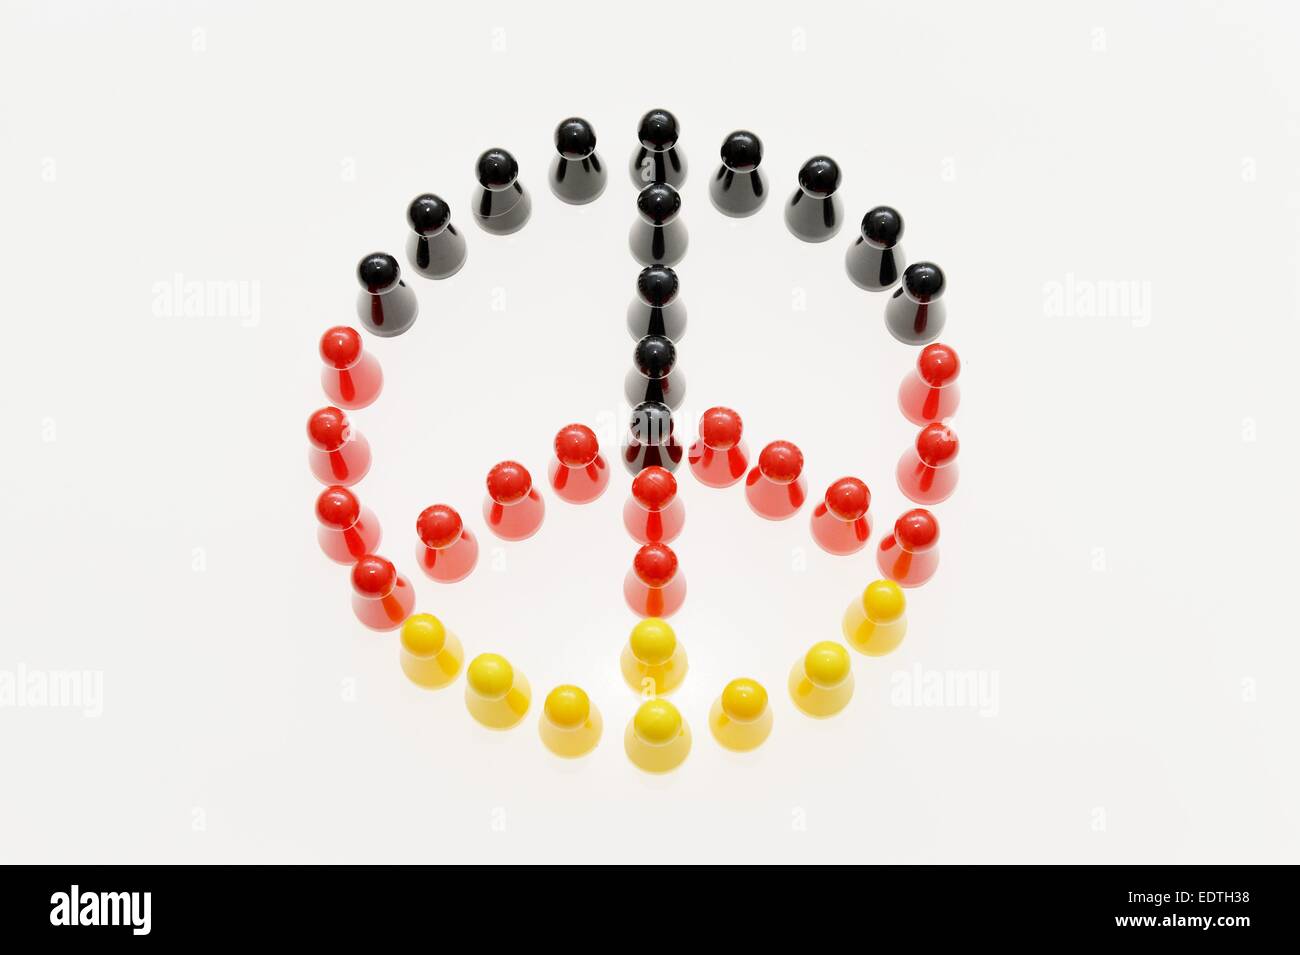 Le figure formano un simbolo di pace, in Germania, città di Osterode, 9. Gennaio 2015. Foto: Frank può Foto Stock